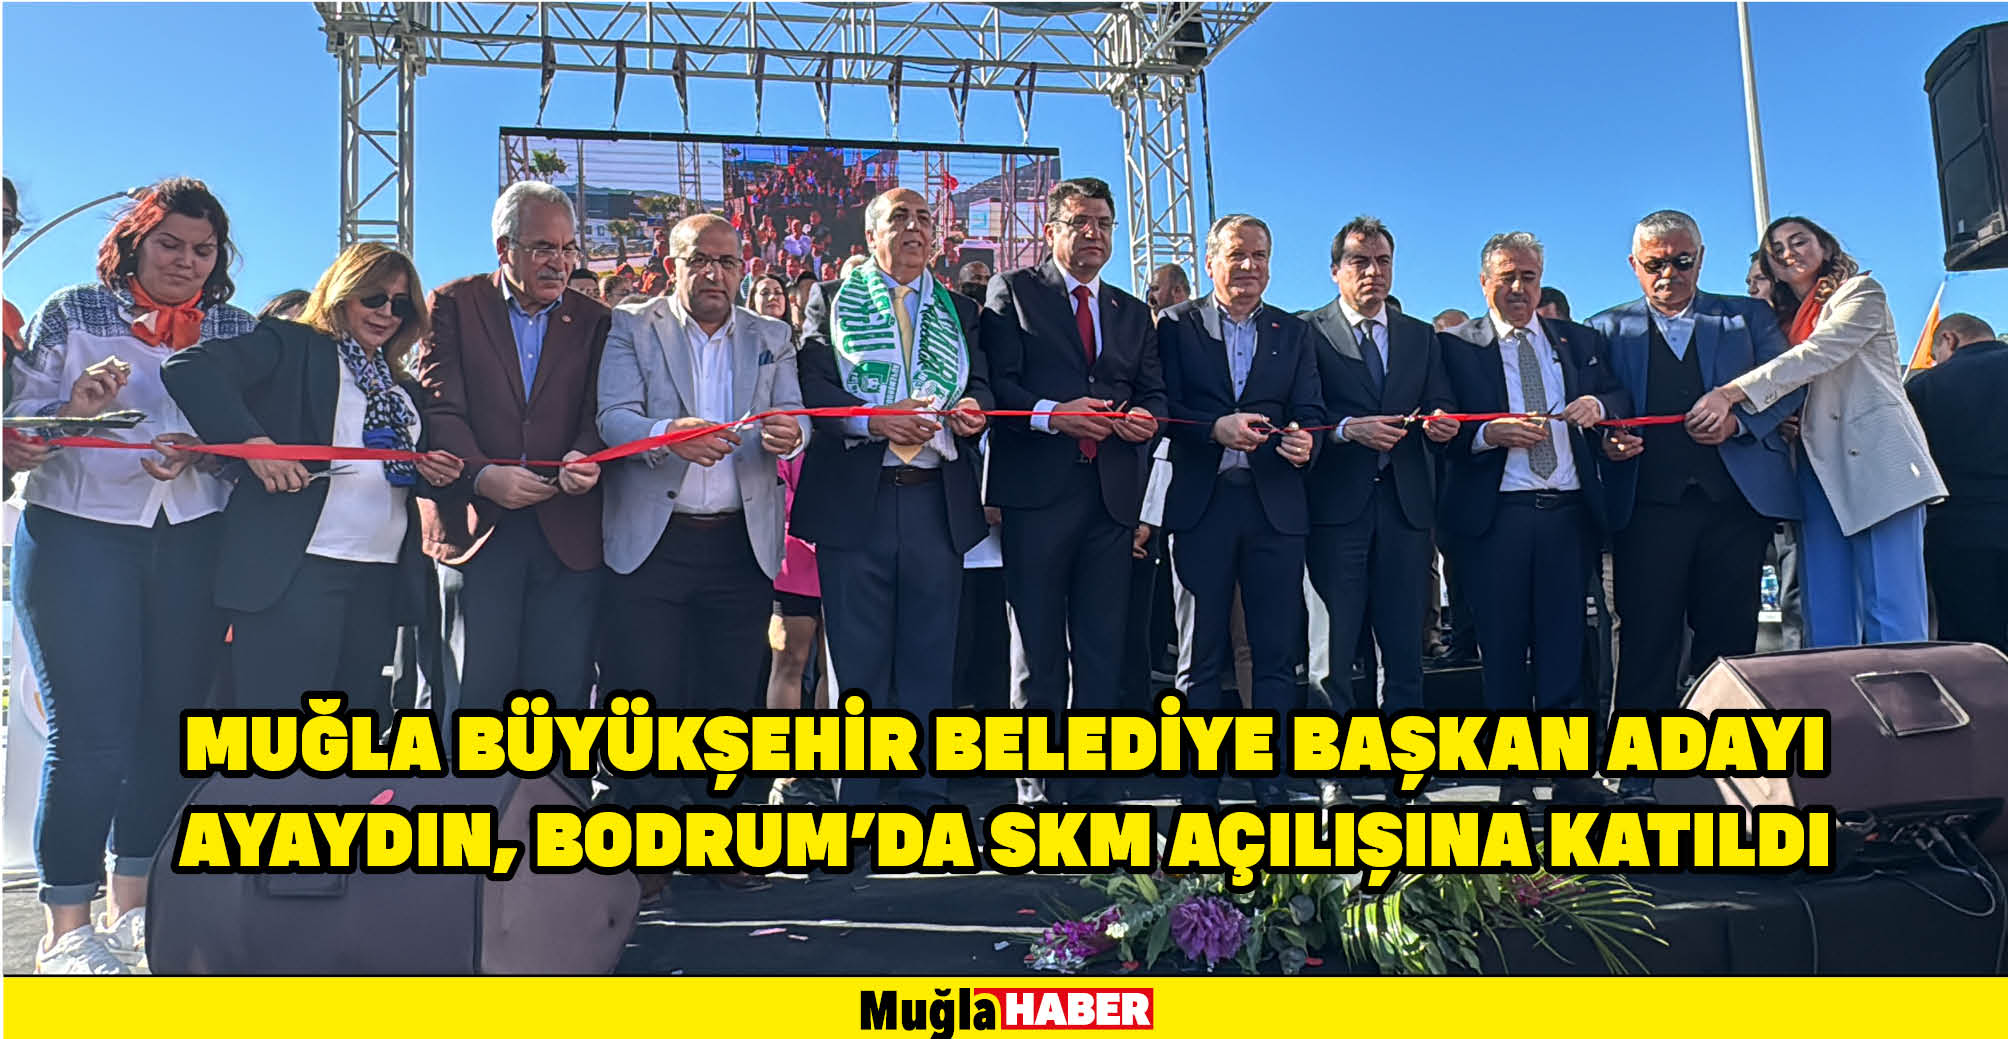 Muğla Büyükşehir Belediye Başkan adayı Ayaydın, Bodrum'da SKM açılışına katıldı